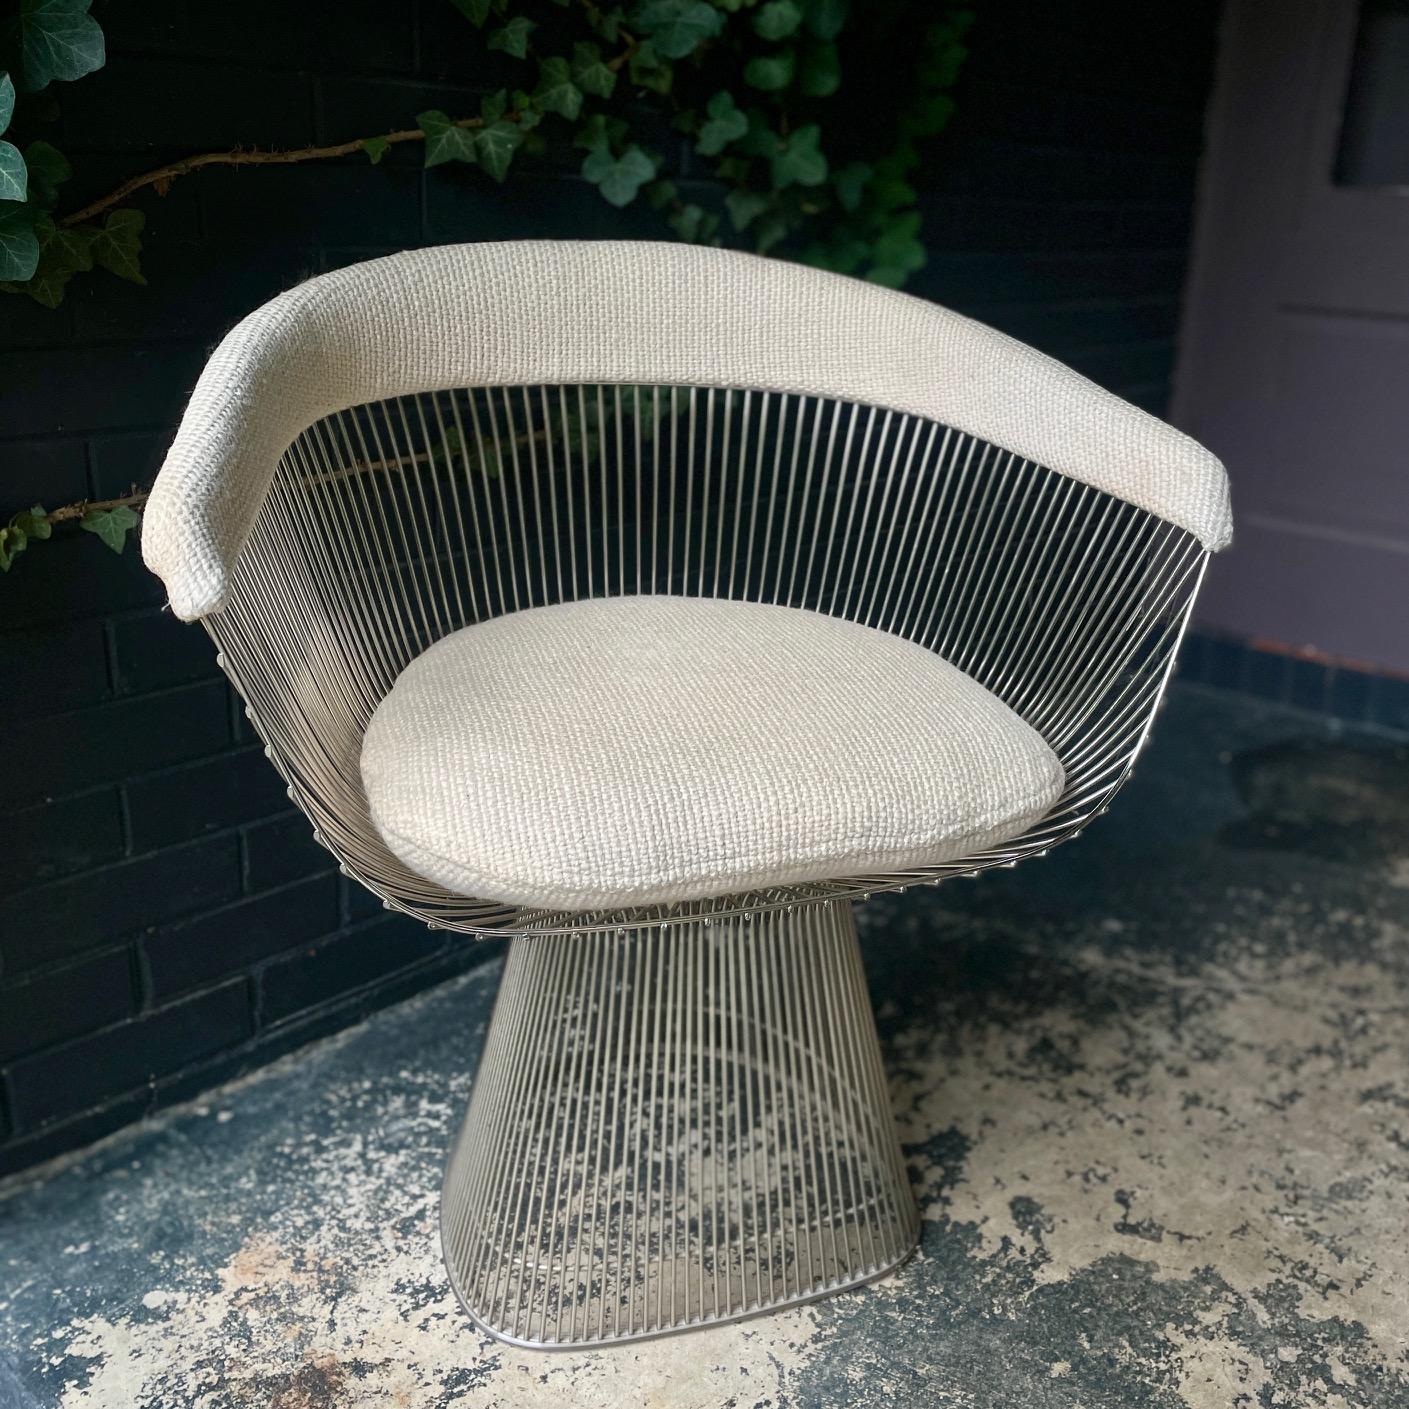 Der perfekte glamouröse Frisierstuhl.  Sehr skulpturaler Drahtsessel, entworfen von Warren Platner und hergestellt von Knoll in den 1970er Jahren.  Dingy original gewebtes Wollmischgewebe mit Knötchen. Ordentlicher Vintage-Zustand.

B 27,5 x T 20,5